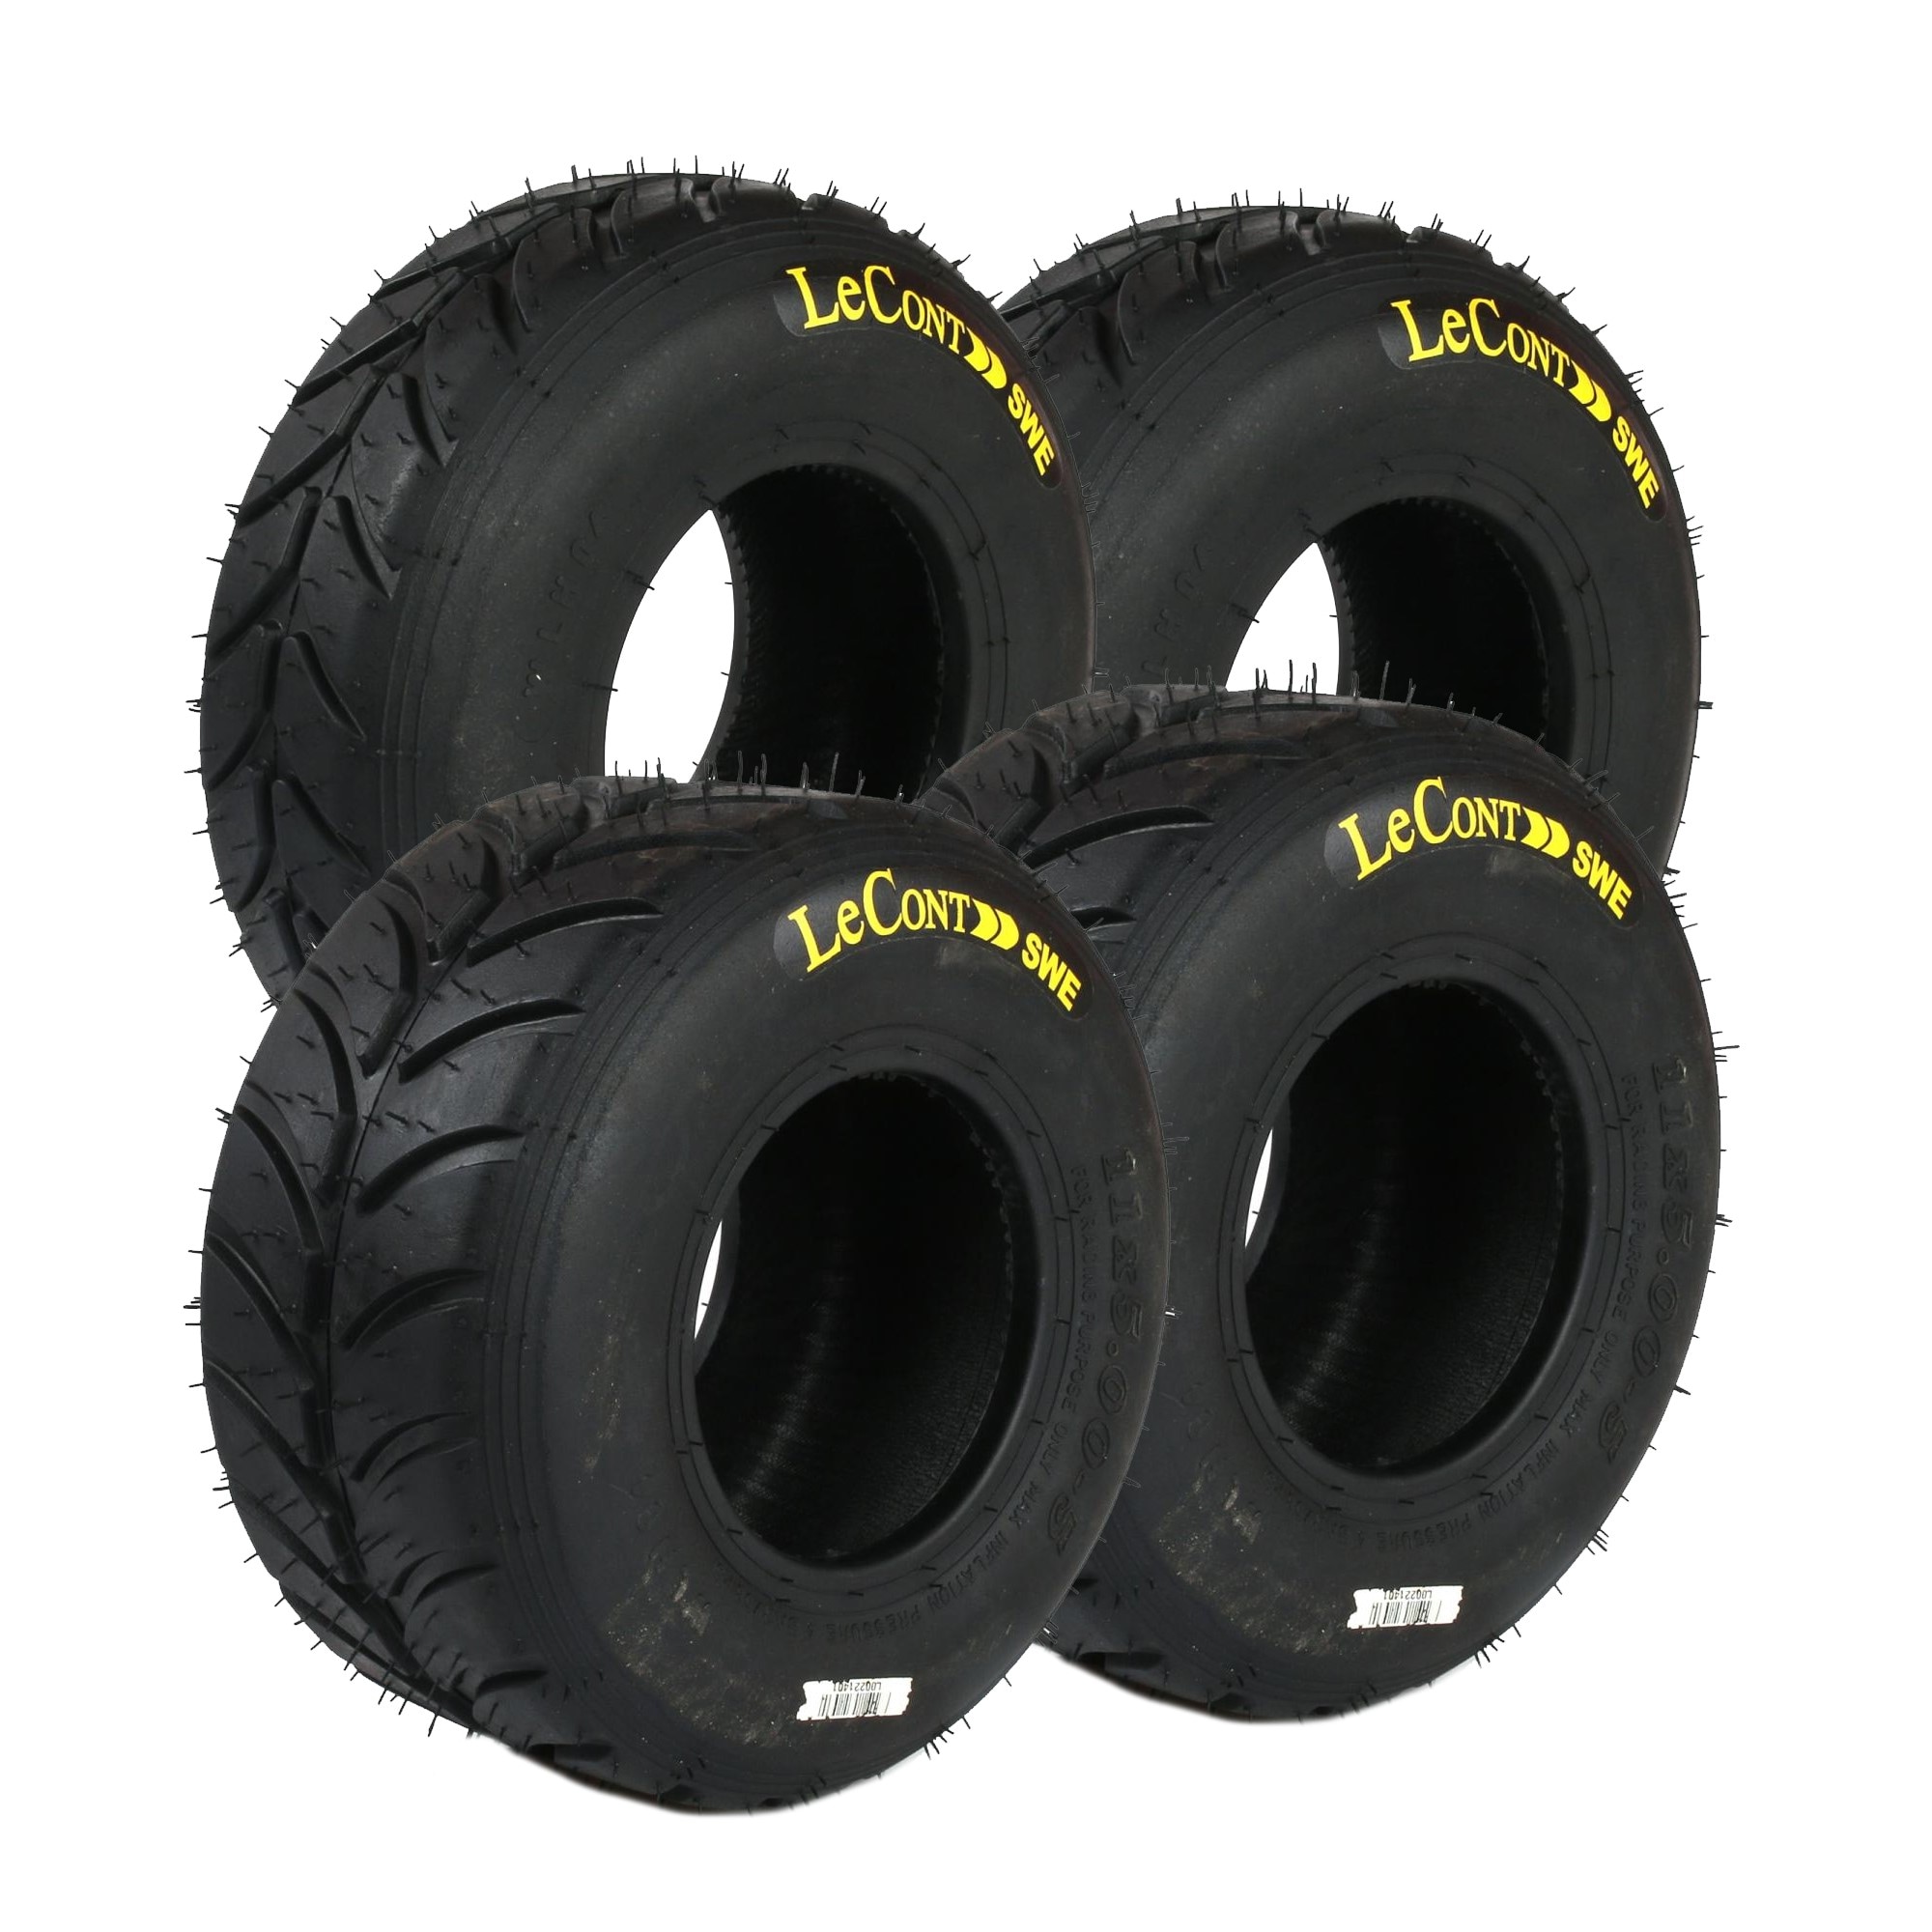 Lecont LH04 Rain tyres